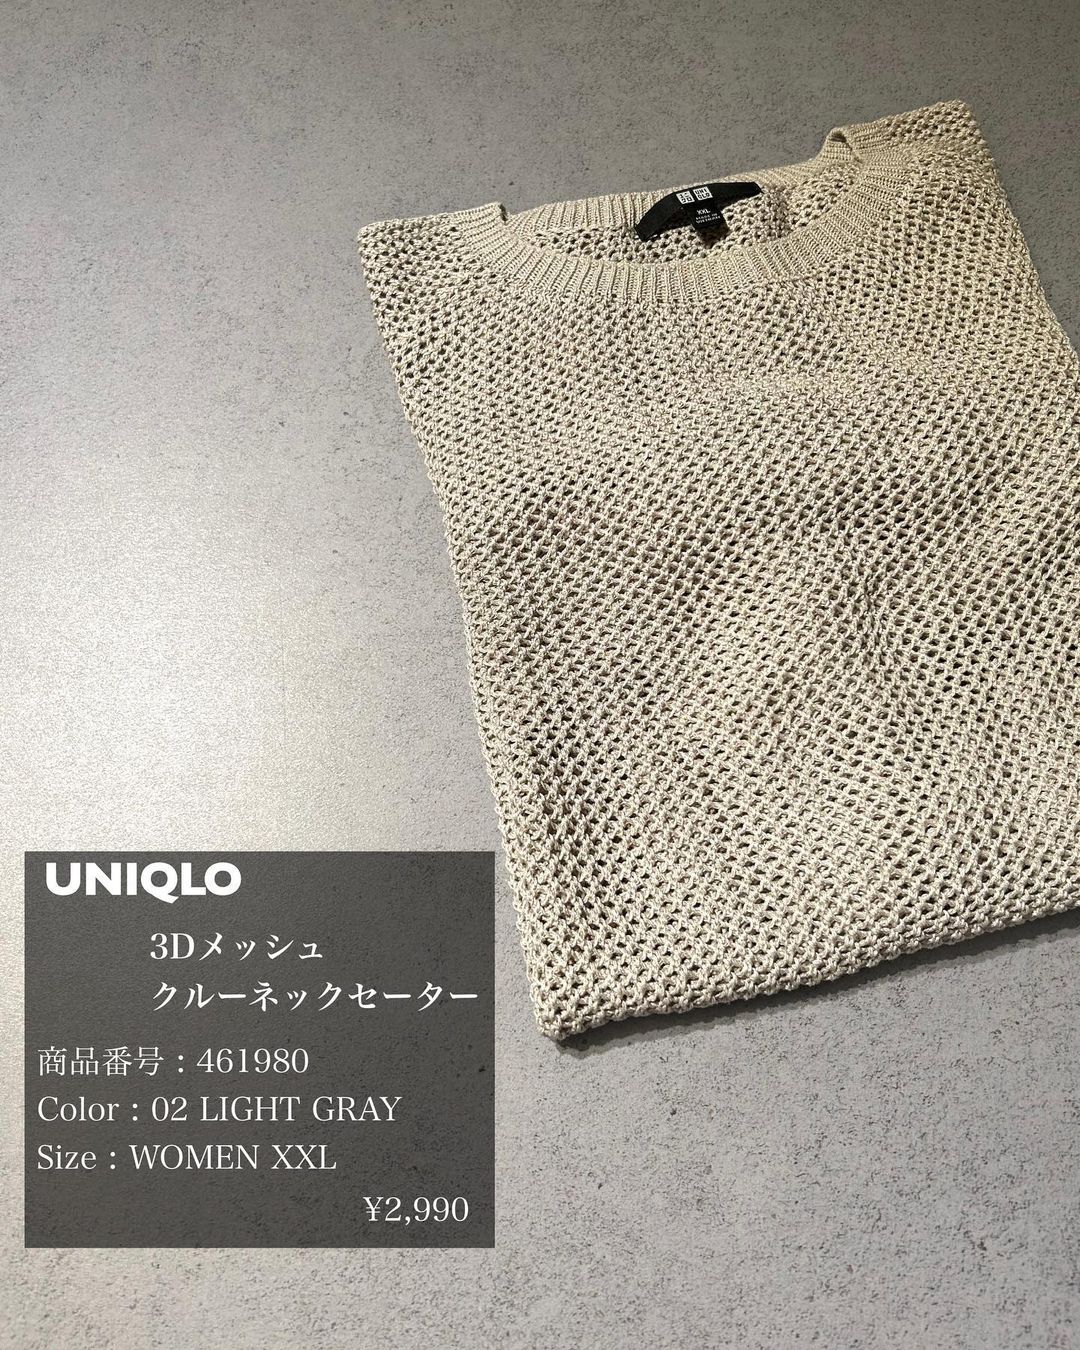 ユニクロの「3Dメッシュクルーネックセーター」